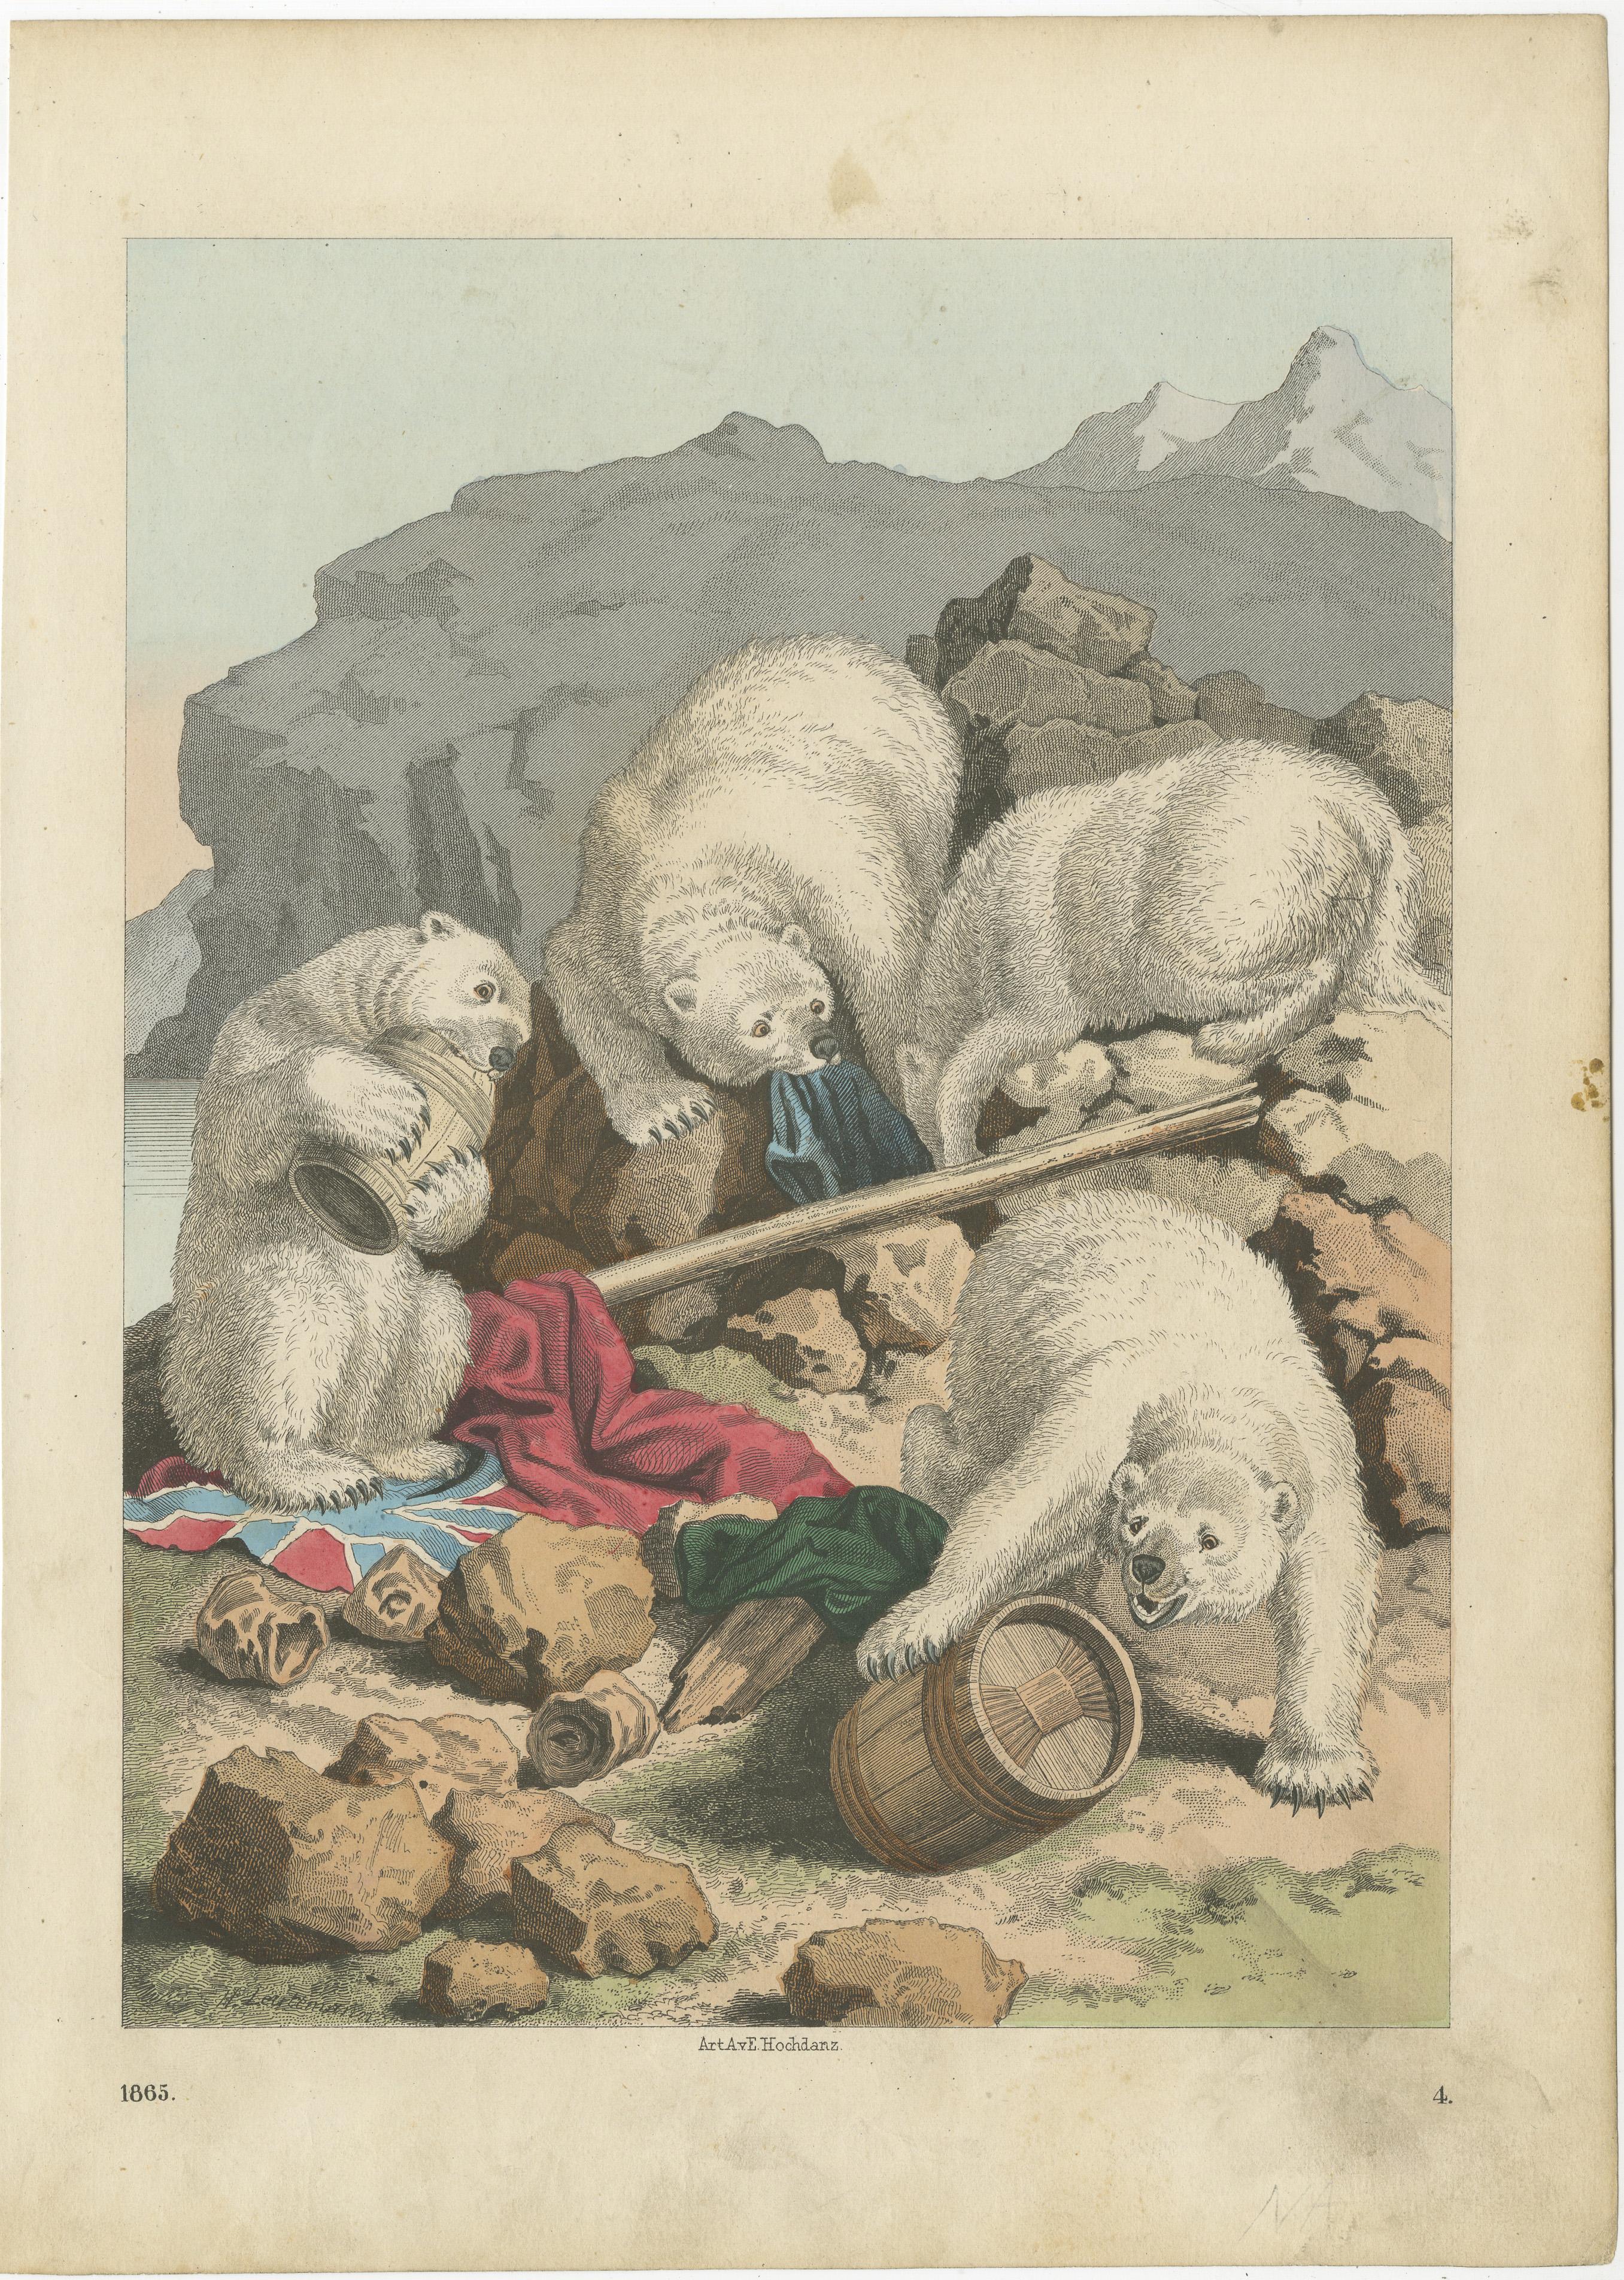 Impression ancienne originale d'ours polaires. Lithographié par ou d'après Hochdanz. Publié vers 1865. 